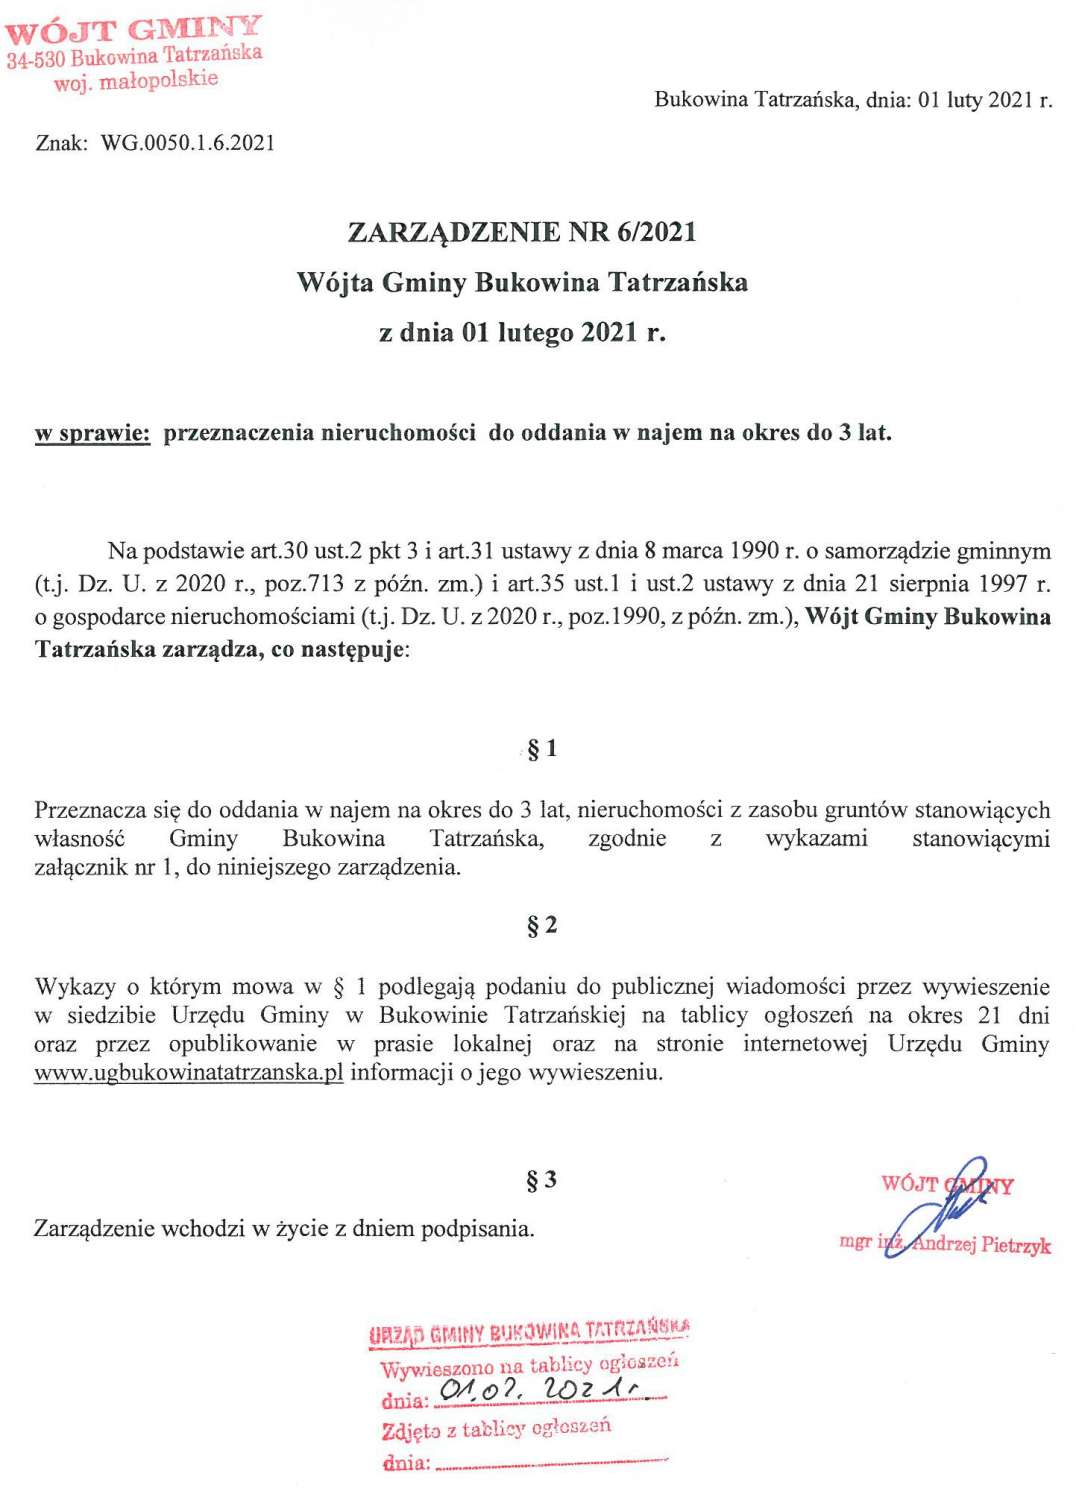 ZARZĄDZENIE NR 6/2021 Wójta Gminy Bukowina Tatrzańska w sprawie przeznaczenia nieruchomości do oddania w najem na okres do 3 lat